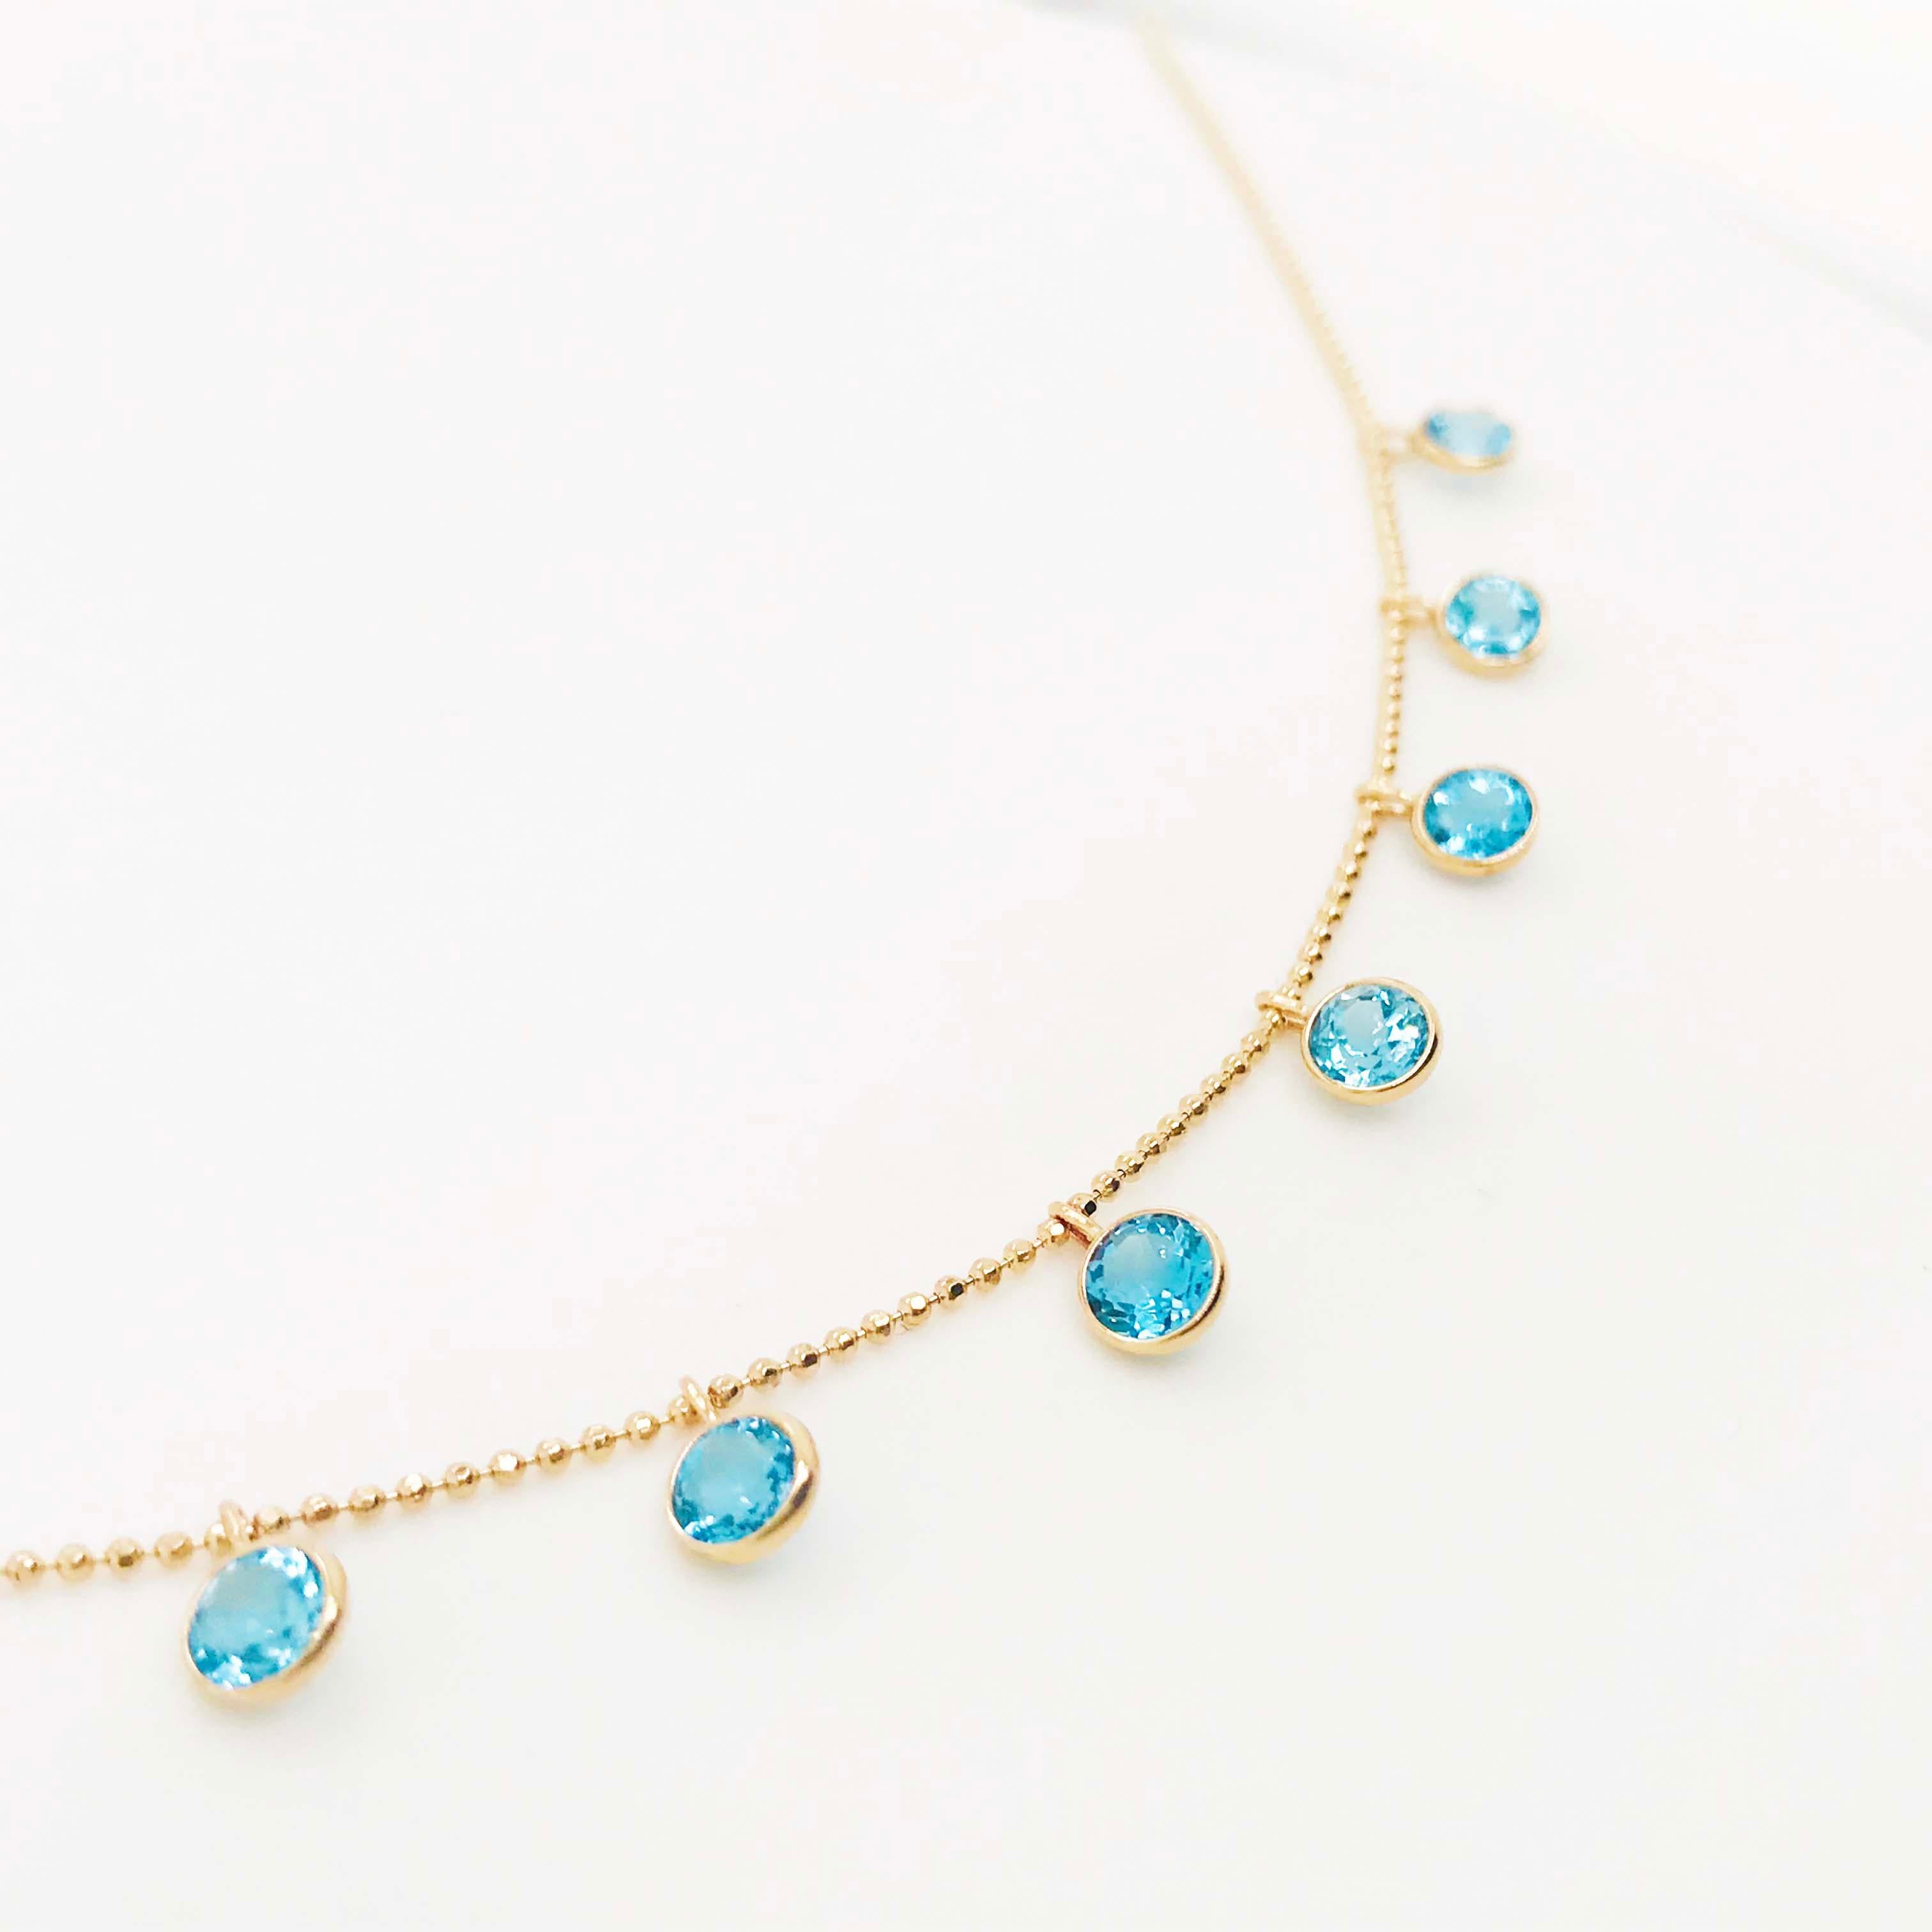 Bezaubernde Kette mit blauen Topas-Edelsteinen! Diese Halskette ist ein modernes Design mit 9 runden blauen Topas-Edelsteinen mit einem Gesamtgewicht von 2,25 Karat, die in goldene Fassungen gefasst sind und an einer goldenen Perlenkette baumeln.